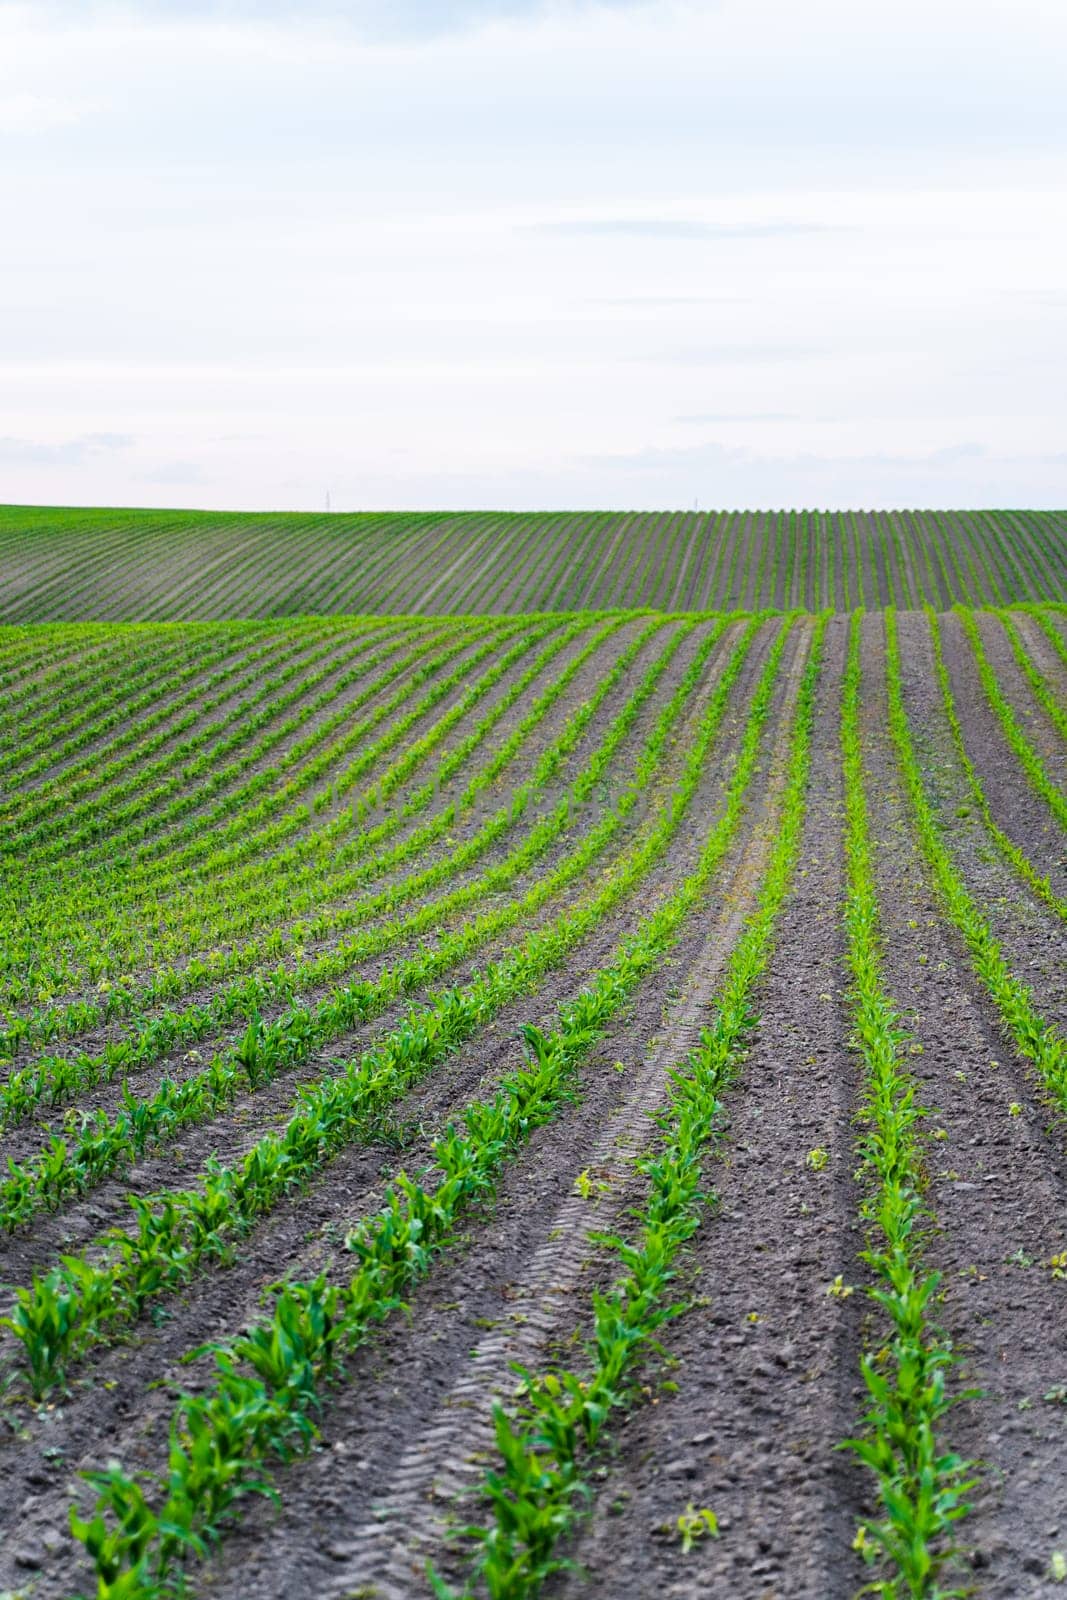 Rows of corn sprouts in a fertile soil on a farm field. Growing corn's sprouts in soil